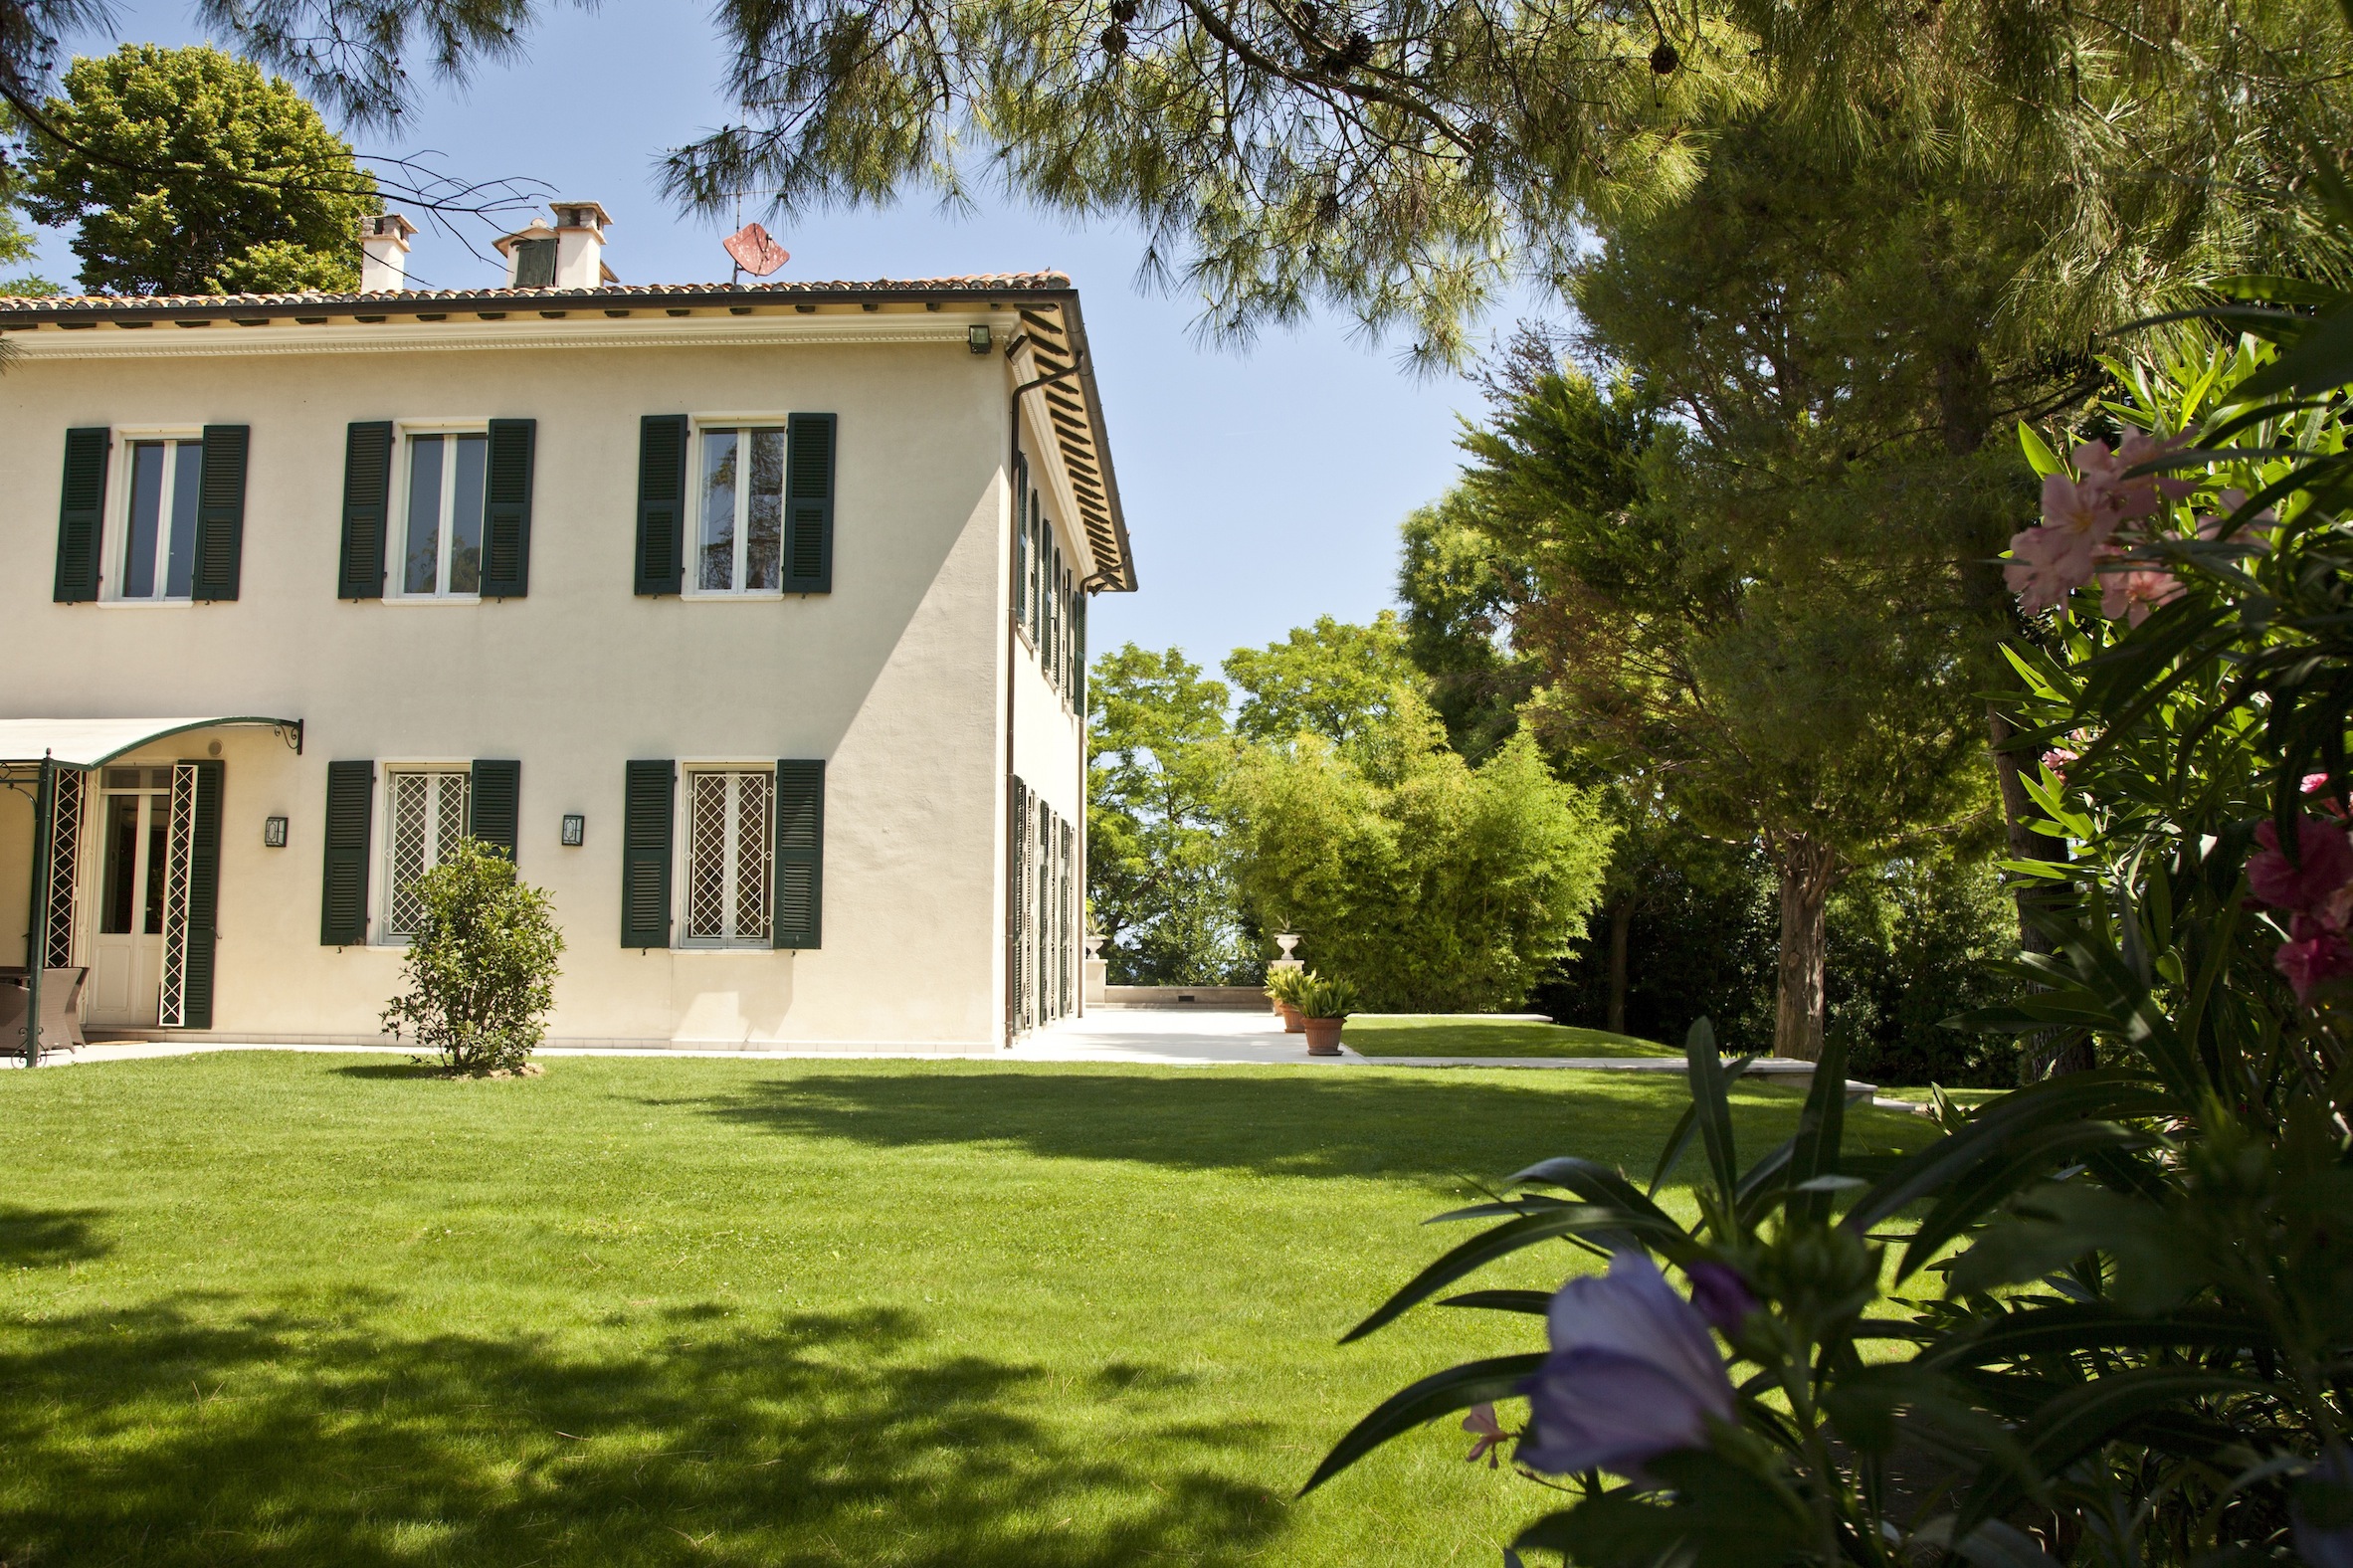 Villa Monacelli - villa privata con piscina - Ville in affitto a Fano,  Marche, Italia - Airbnb